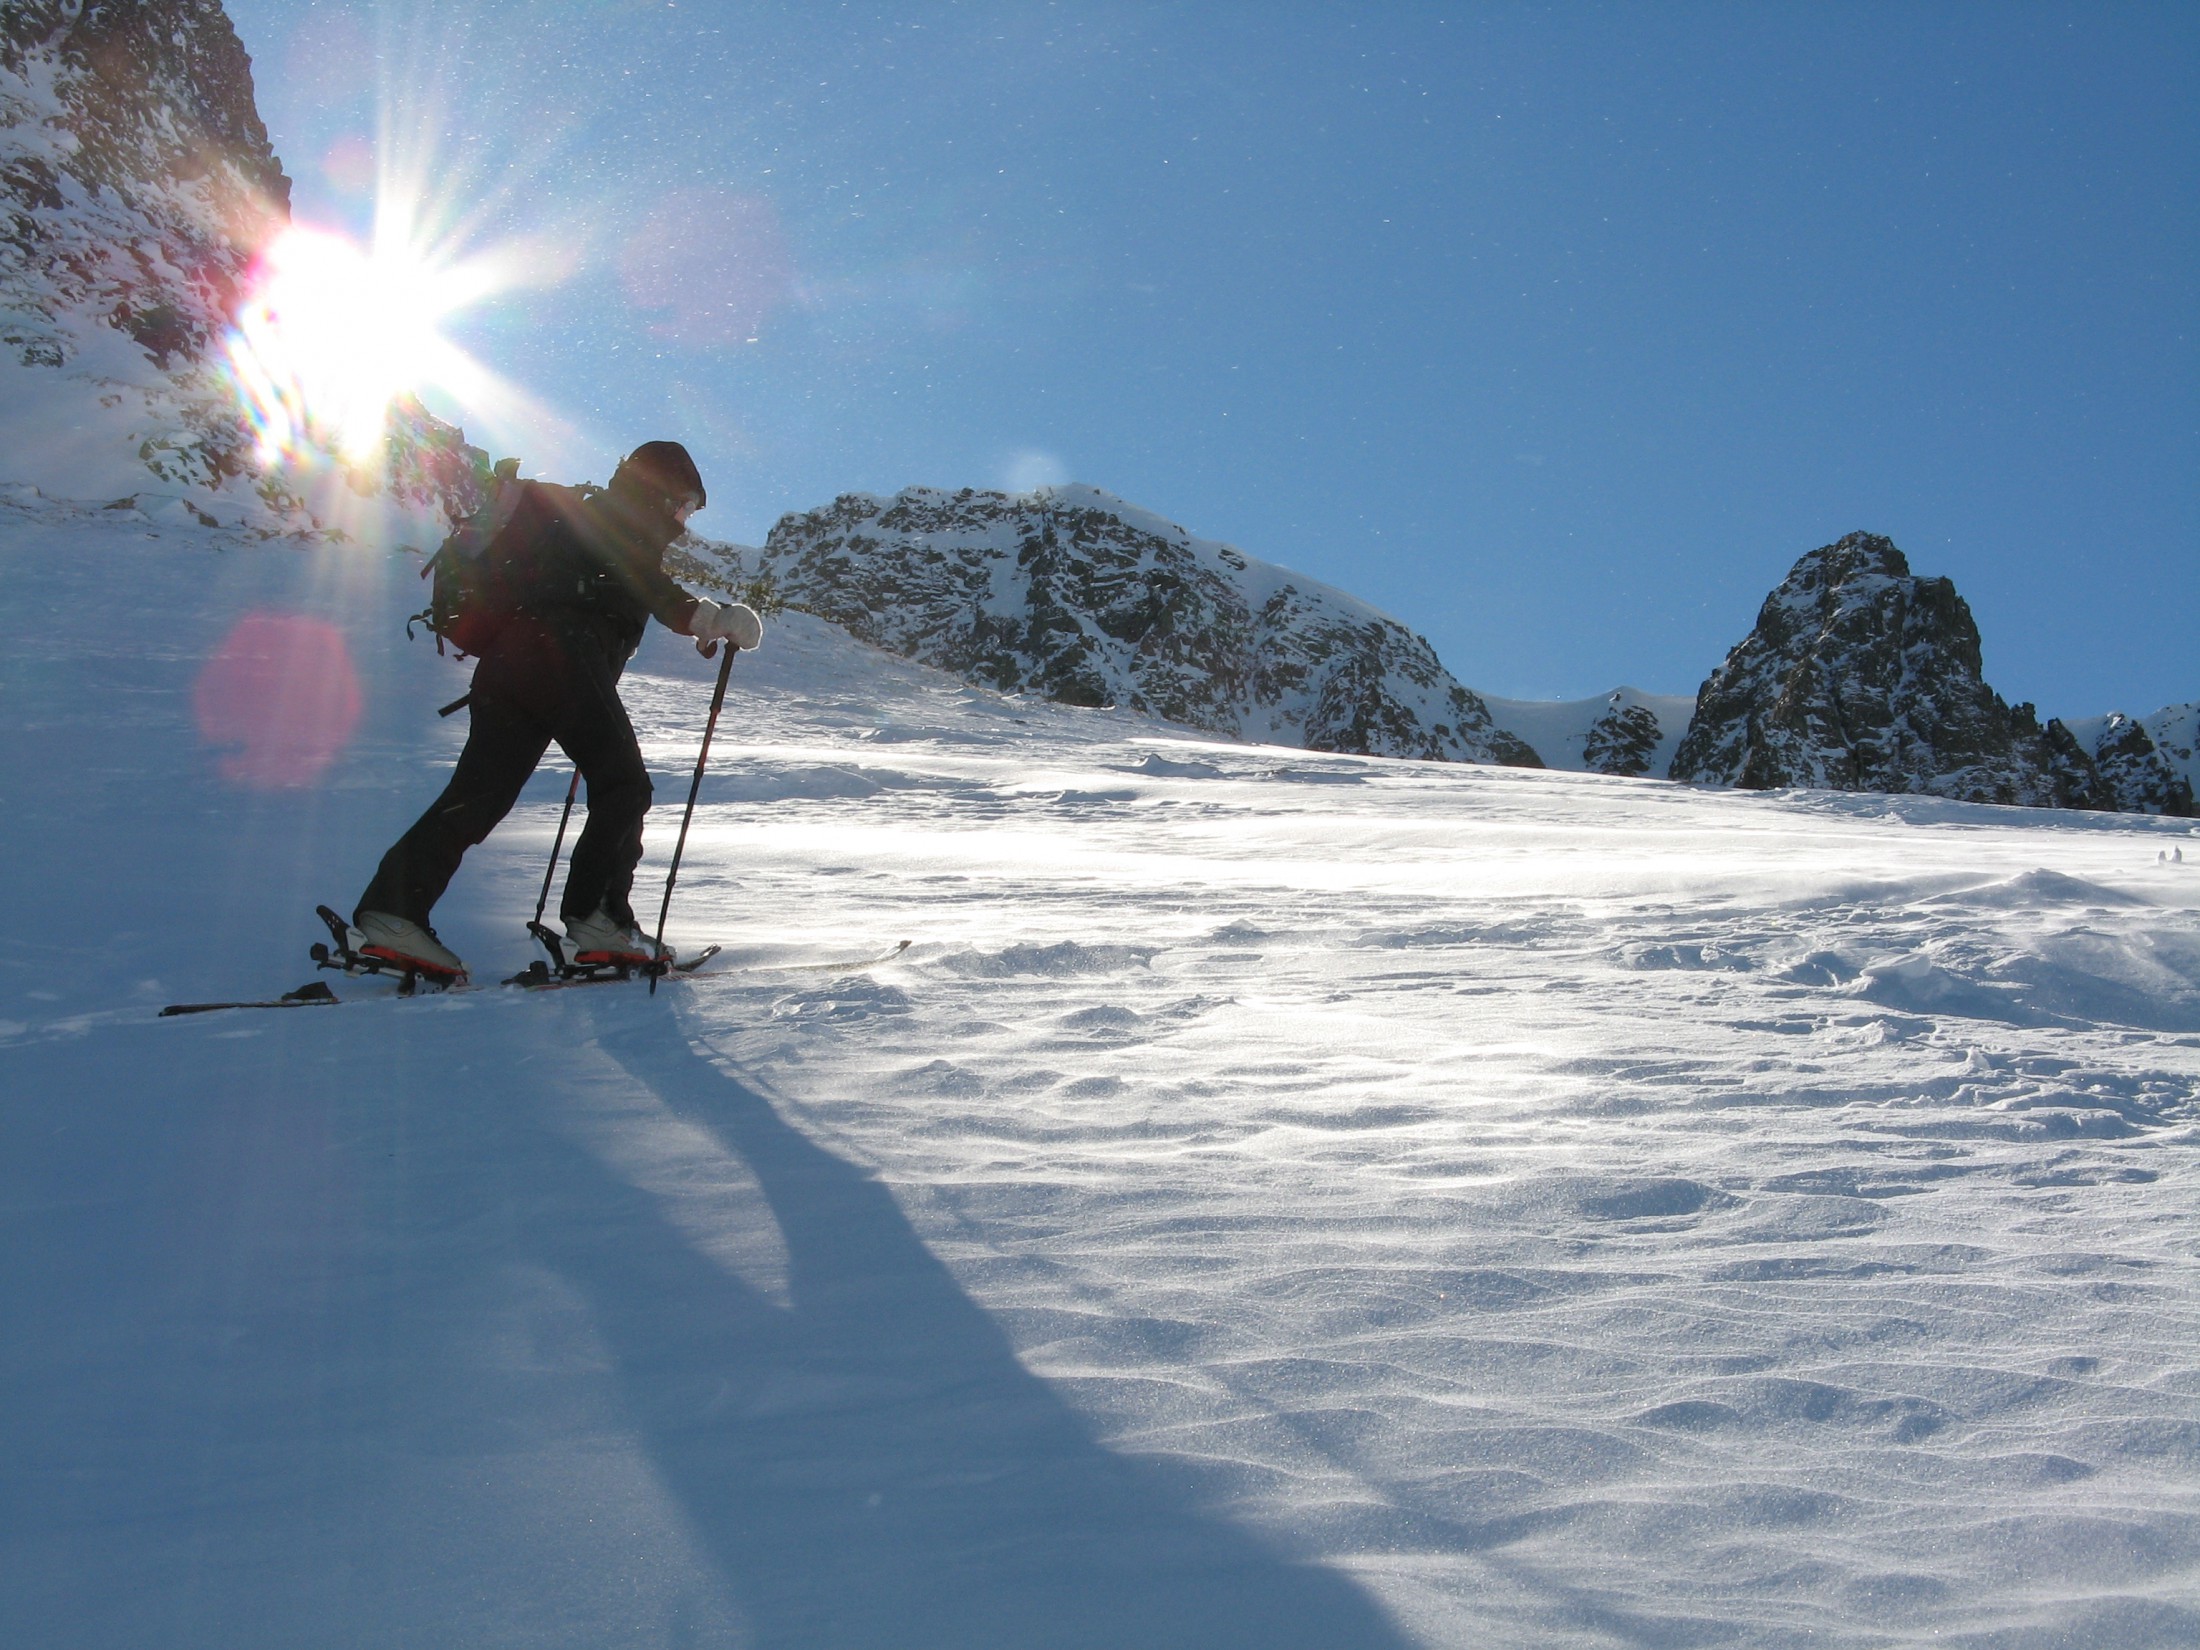 Skitourentage für Einsteiger